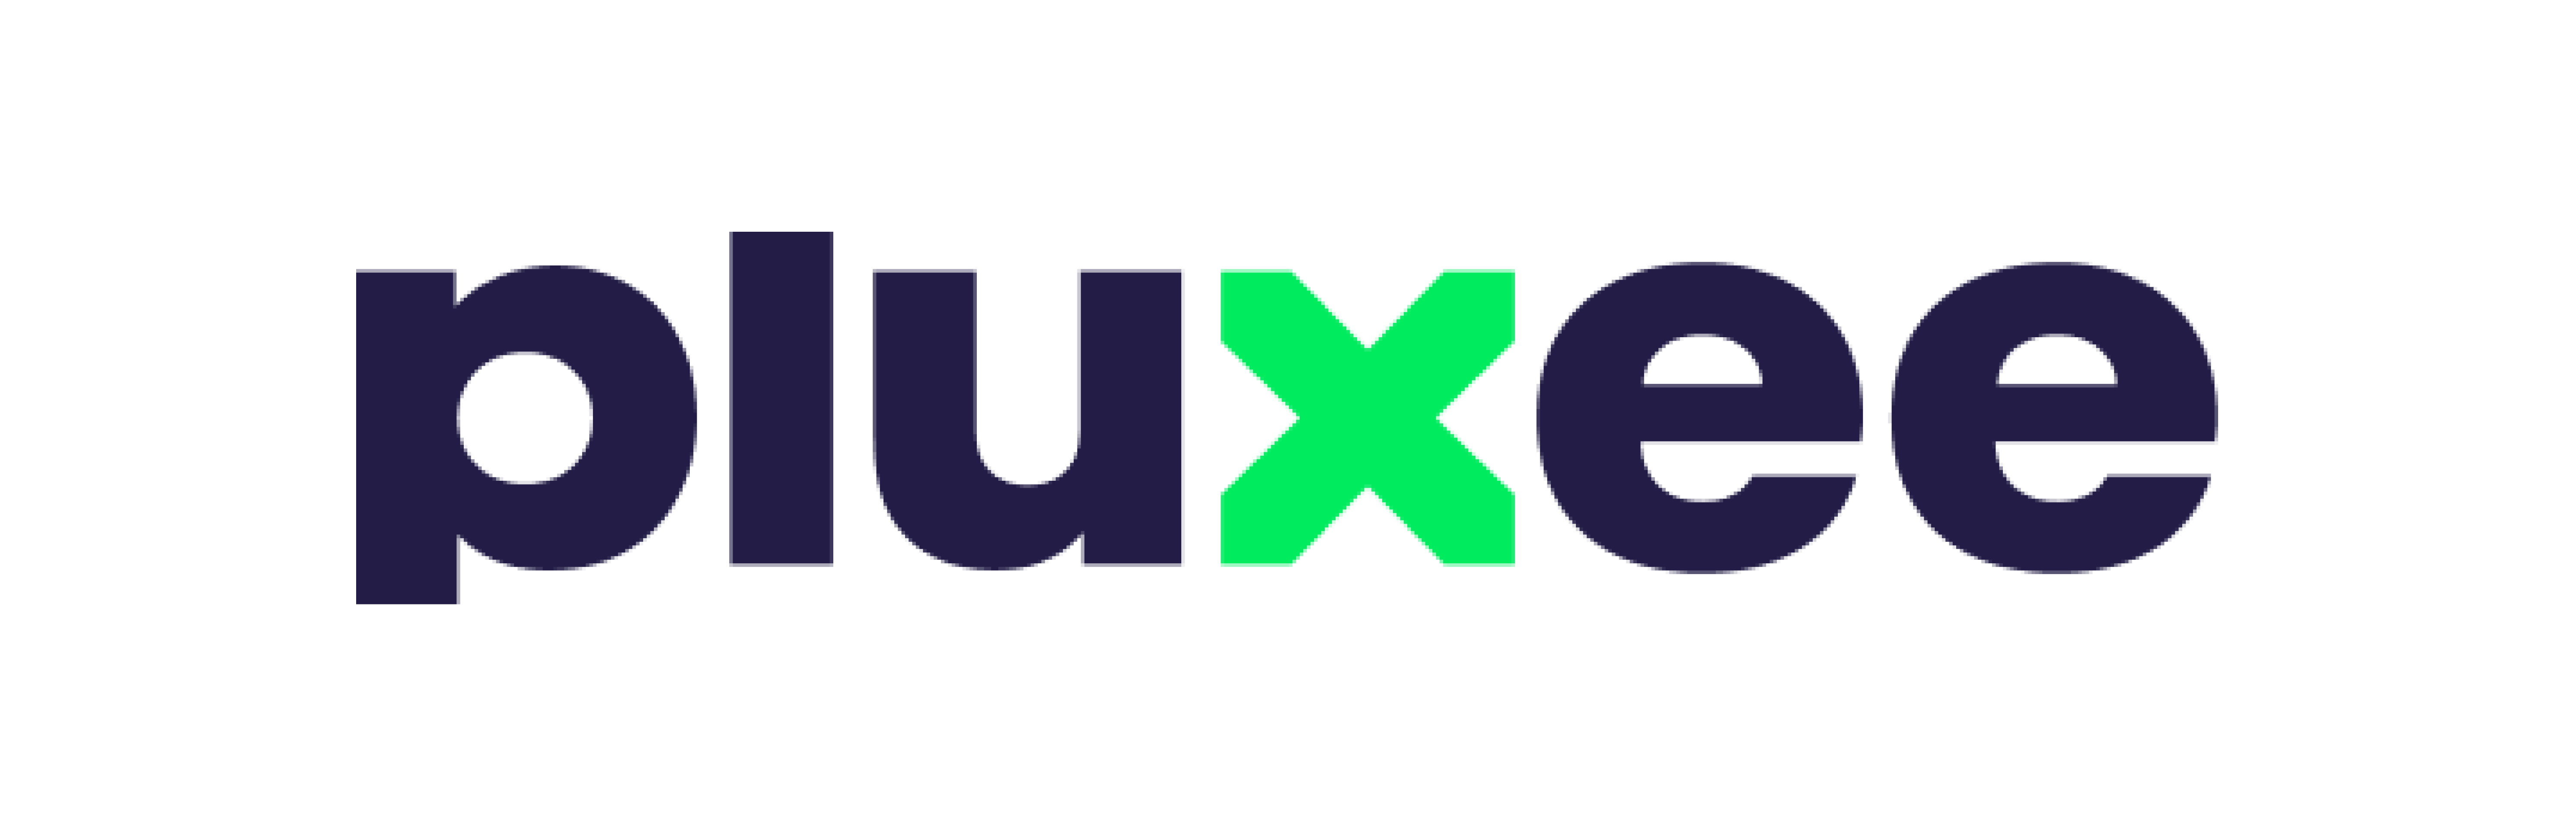 Pluxee logo